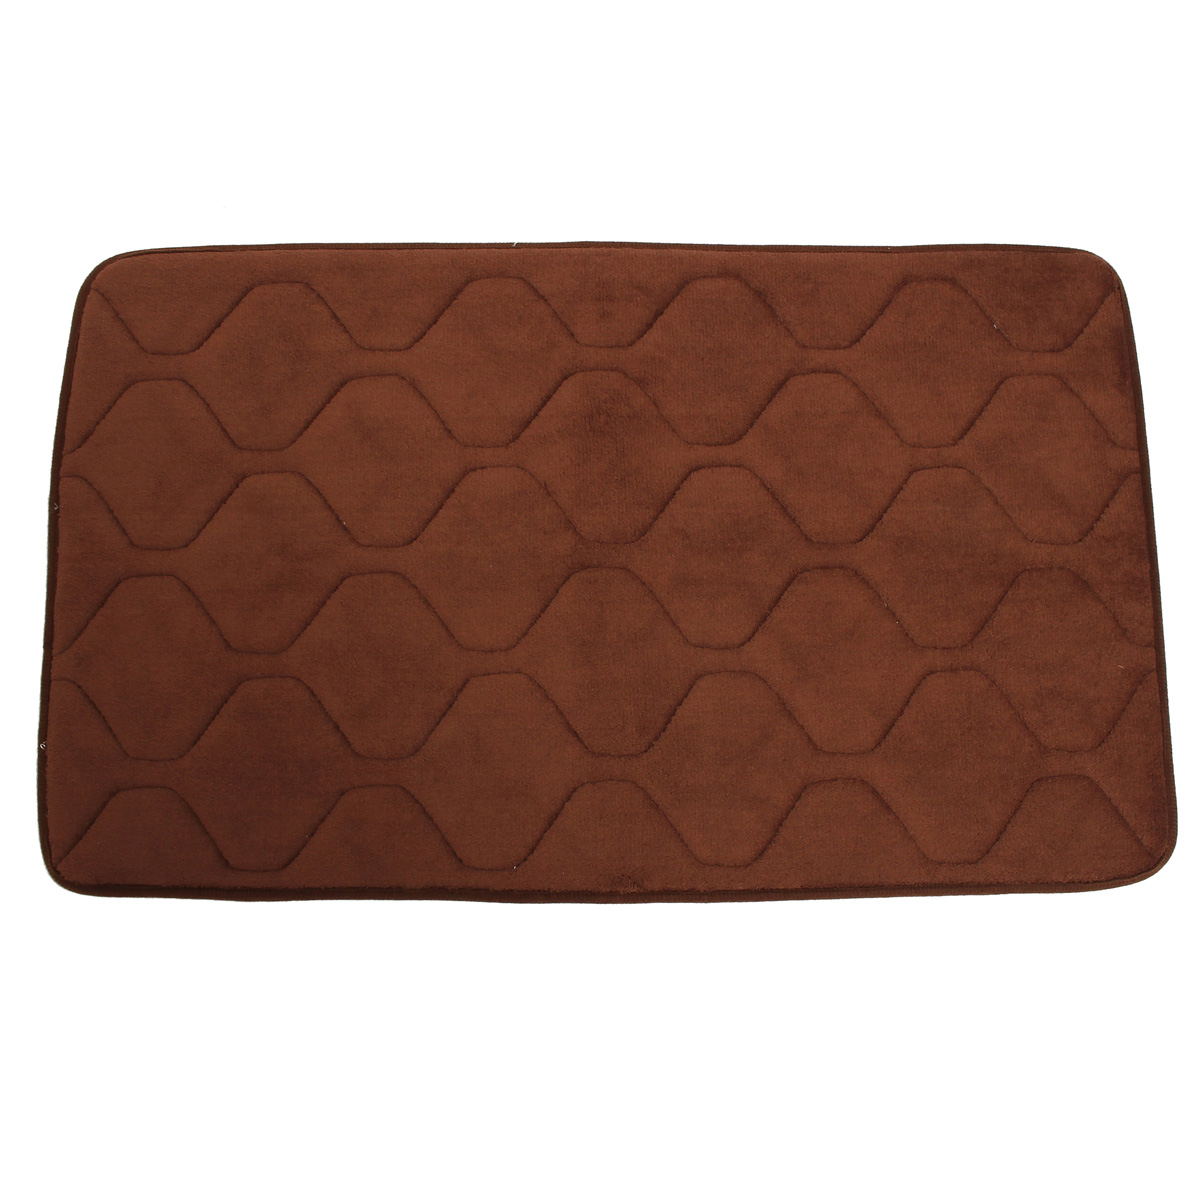 80x50cm Absorbent Anti Slip Memory Carpet Bath Rug Coral Velvet Chronic Rebound Floor Mat